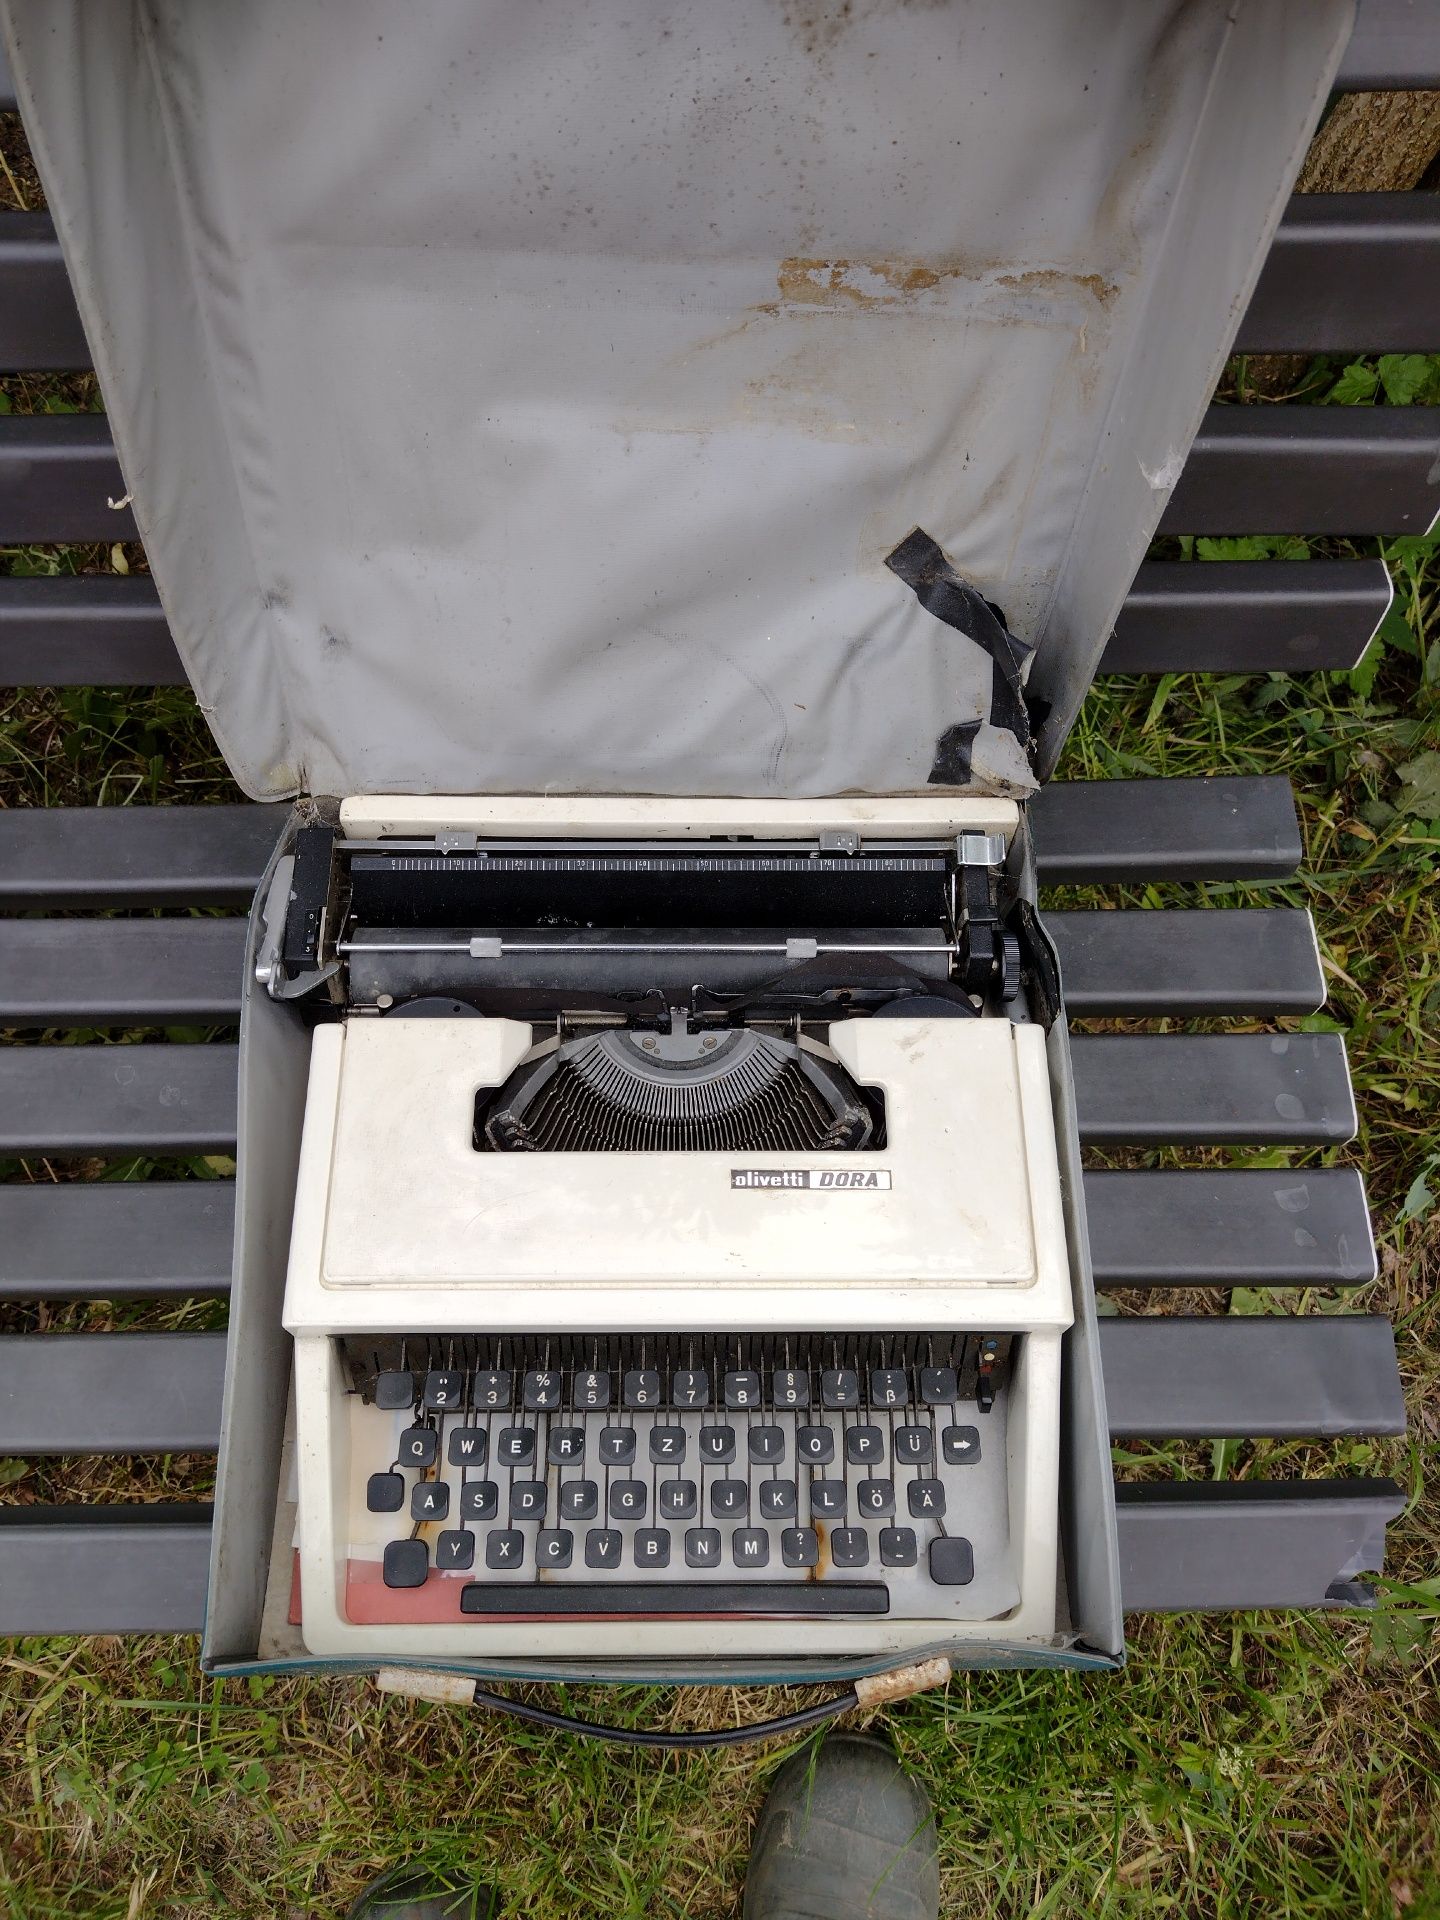 Hiszpańska maszyna do pisania walizkowa Olivetti Dora